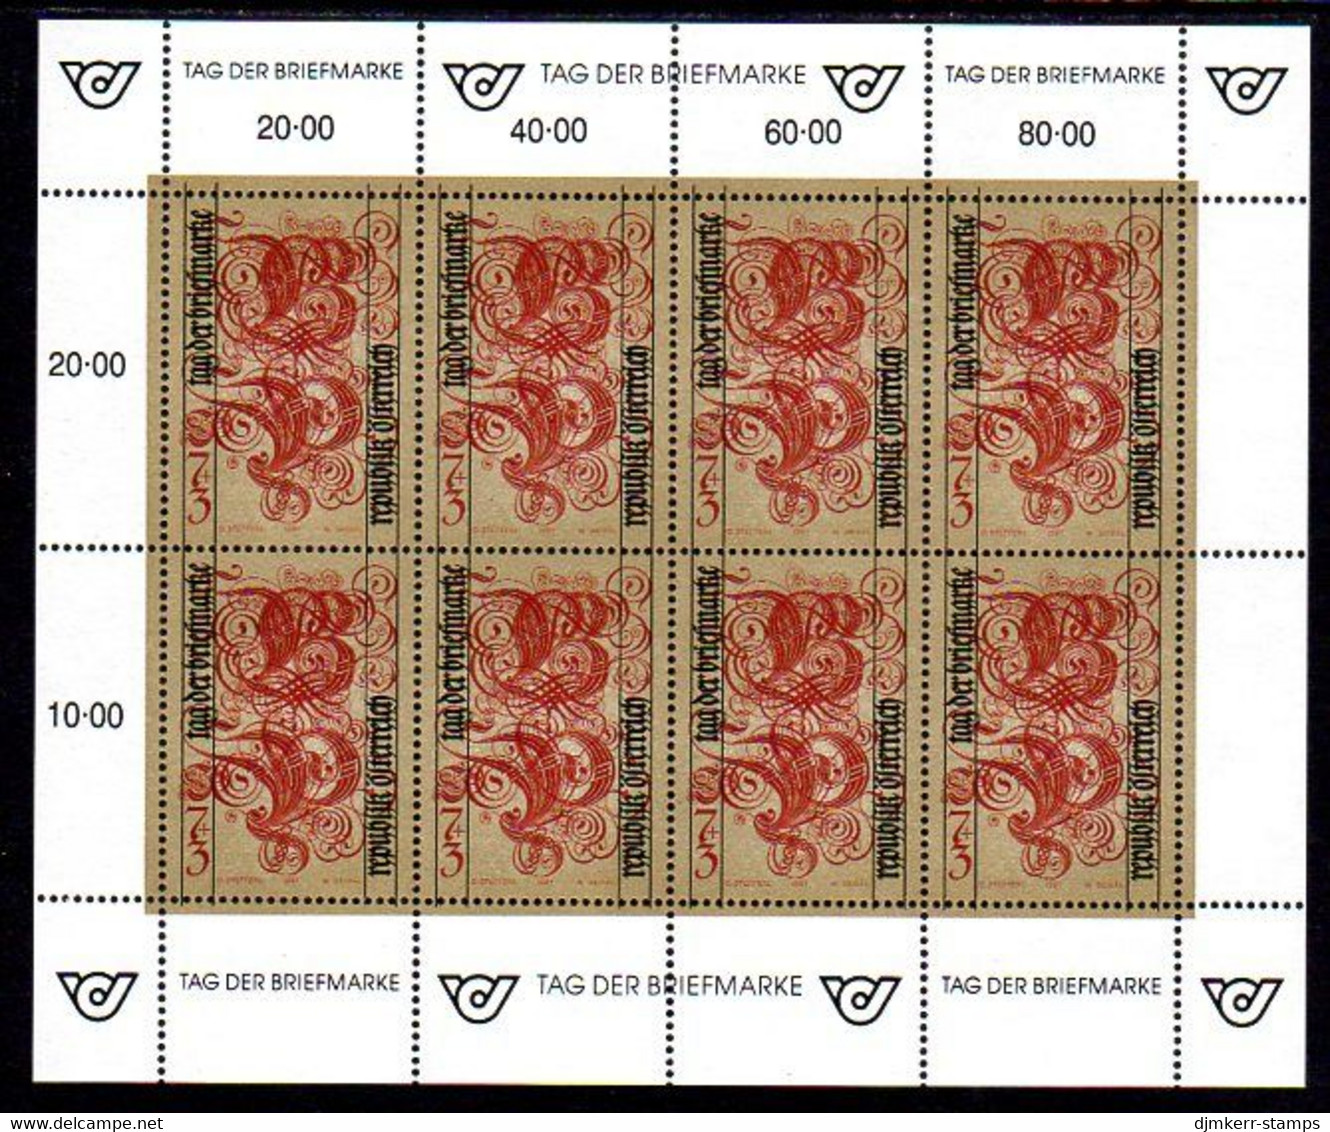 AUSTRIA 1991 Stamp Day Sheetlet, MNH / **.  Michel 2032 Kb - Blokken & Velletjes